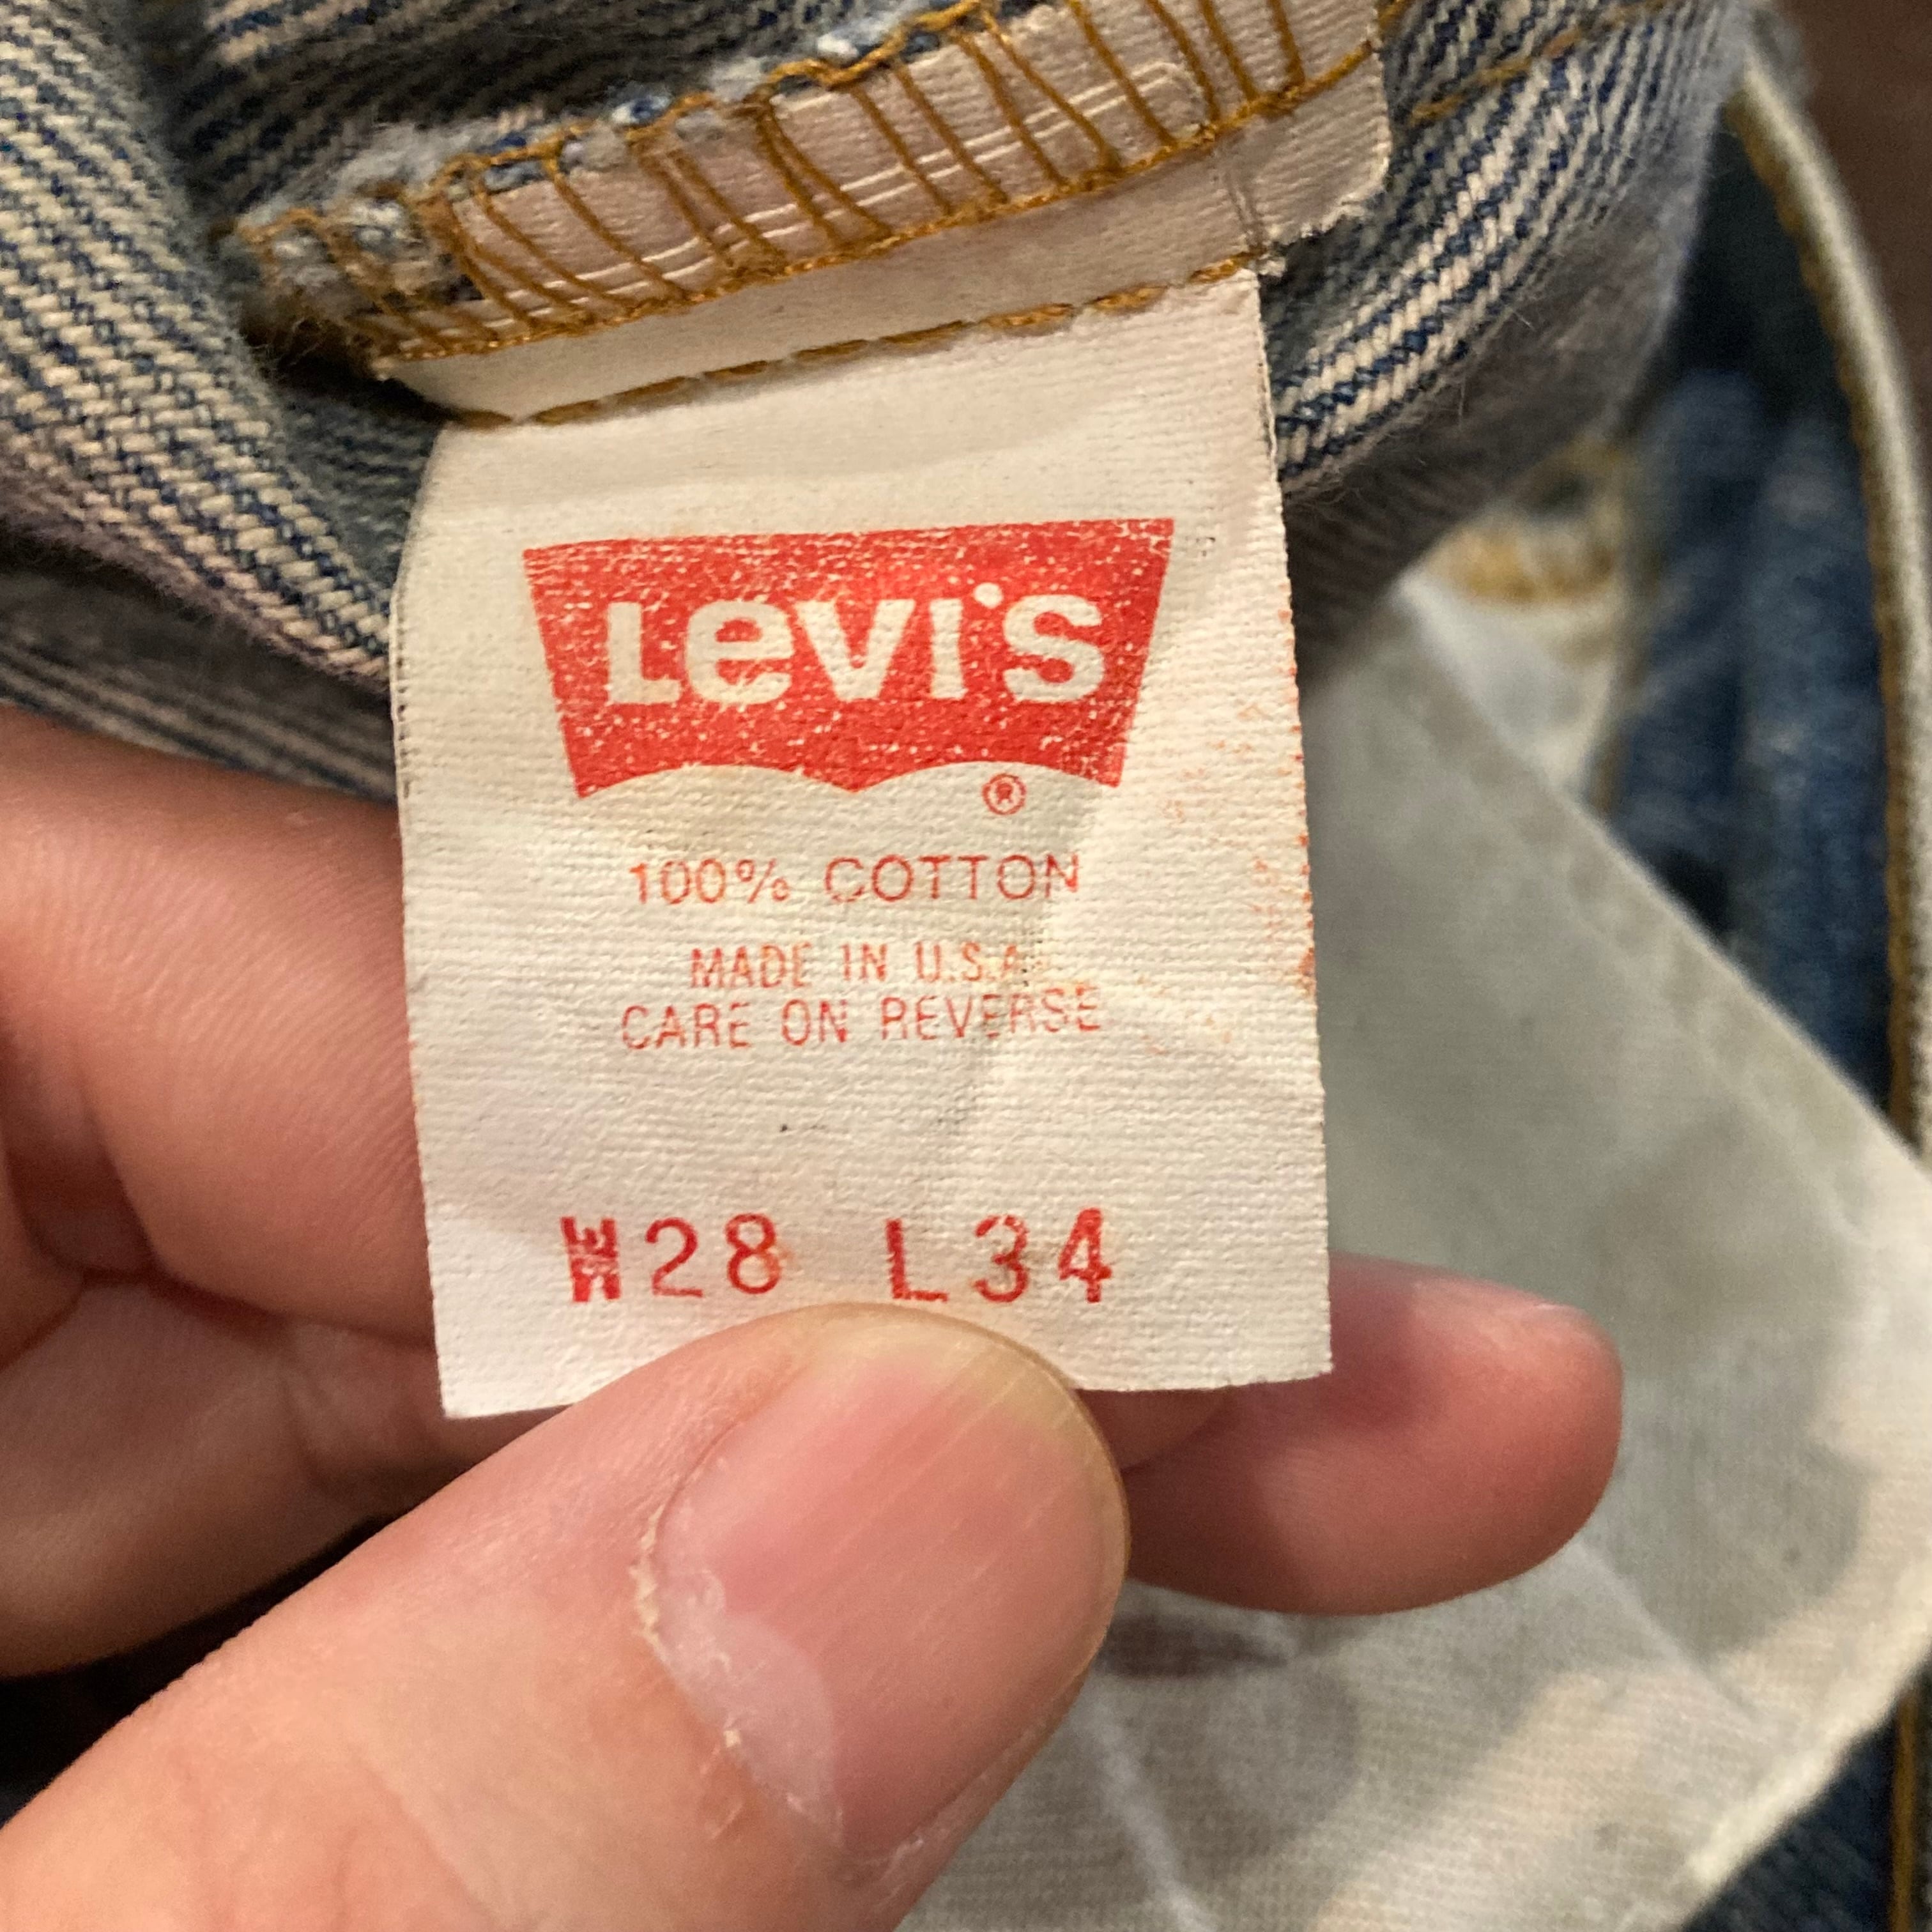 Levi’s 517 made in U.S.A